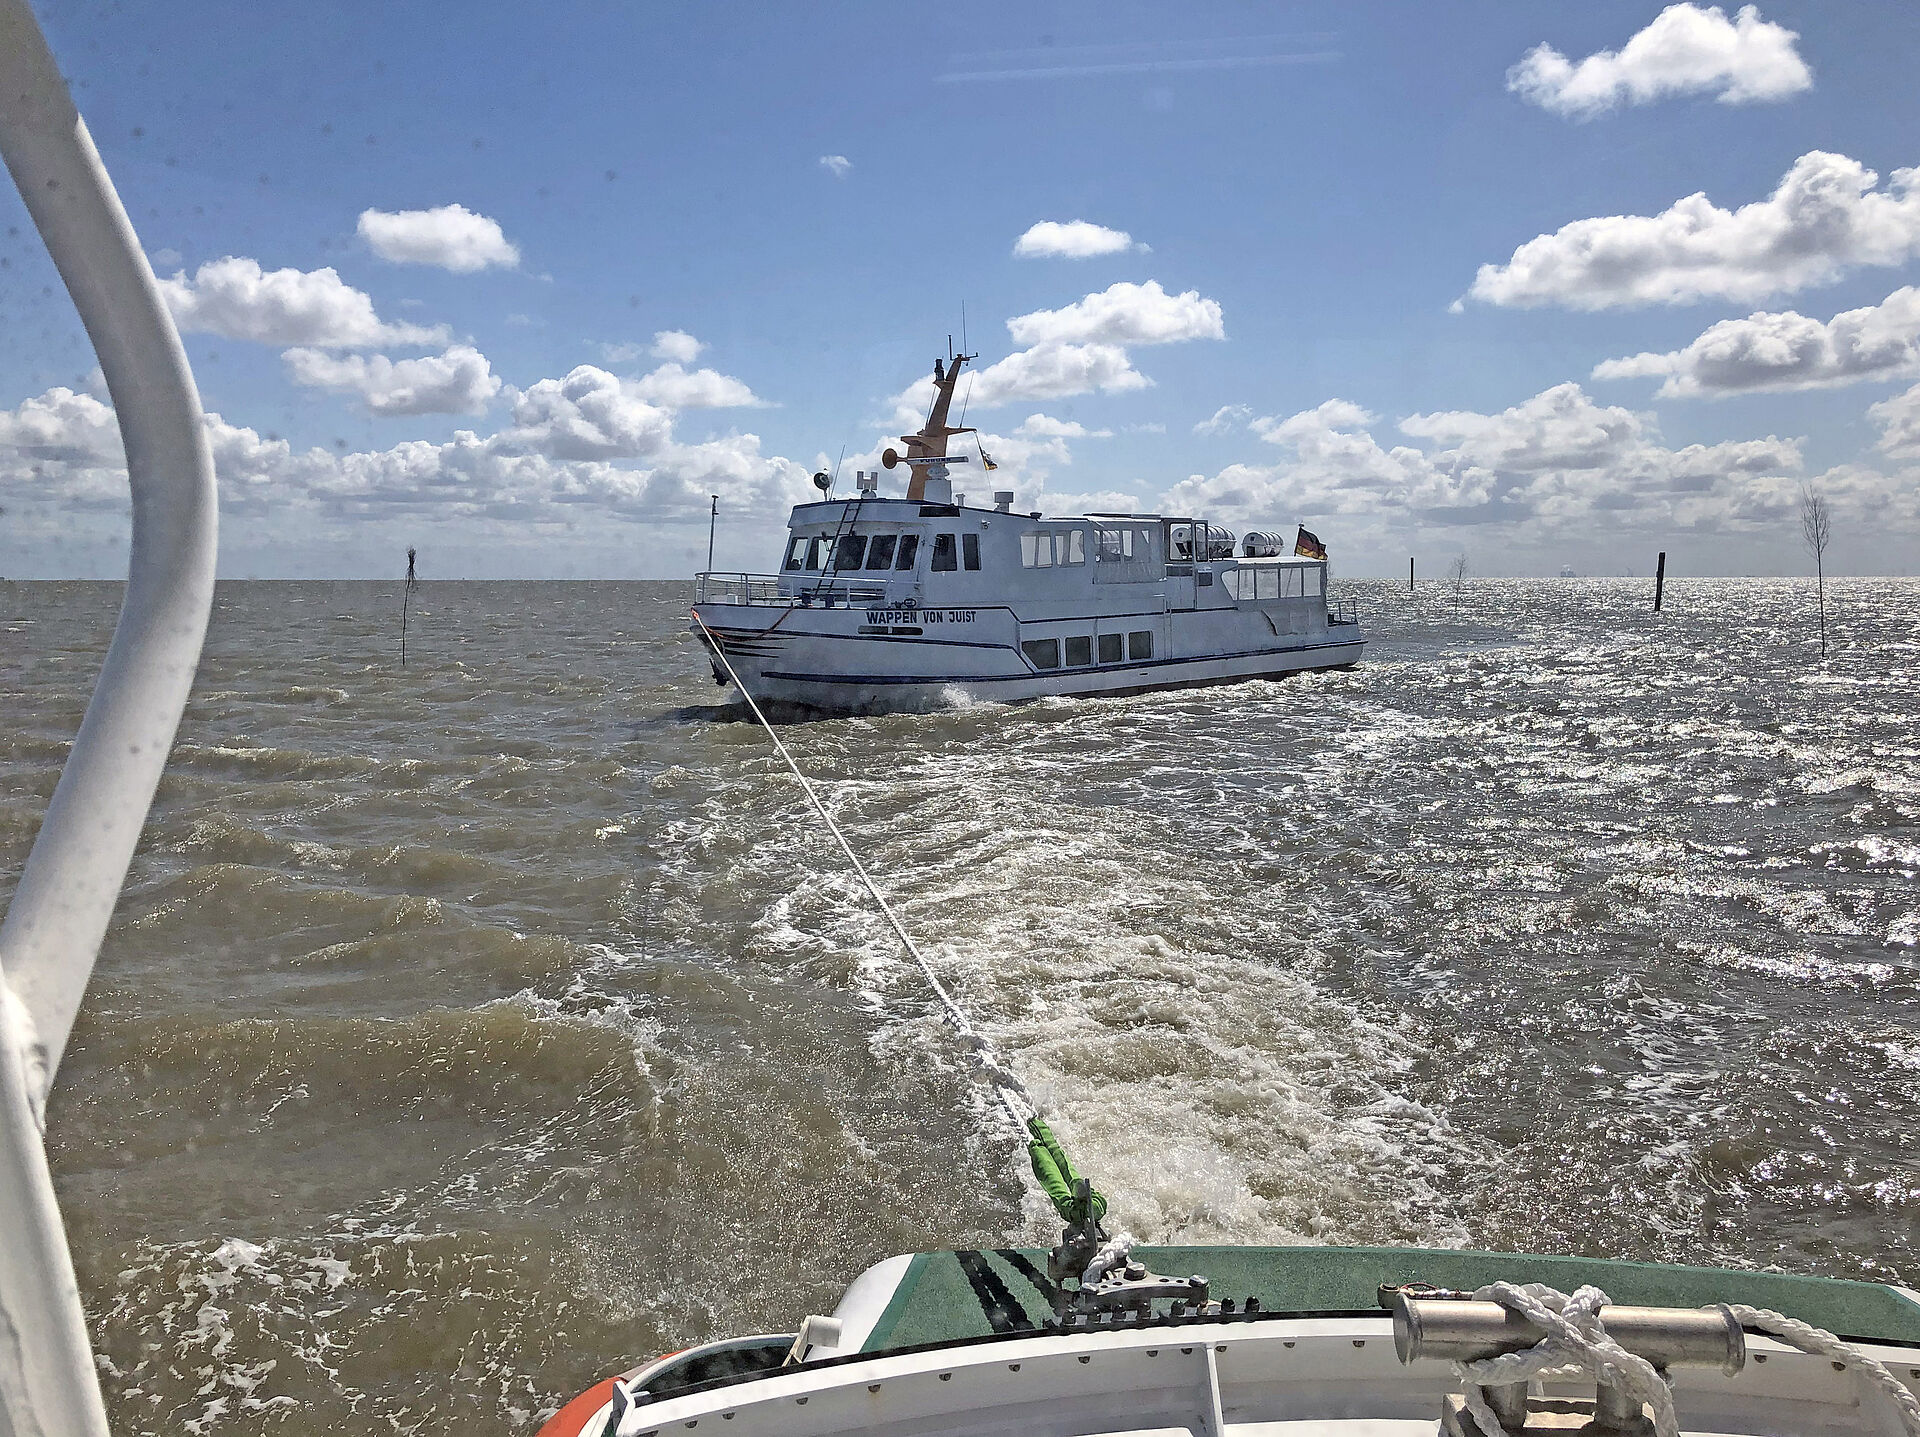 Seenotretter von Juist bringen Fahrgastschiff sicher in den Hafen